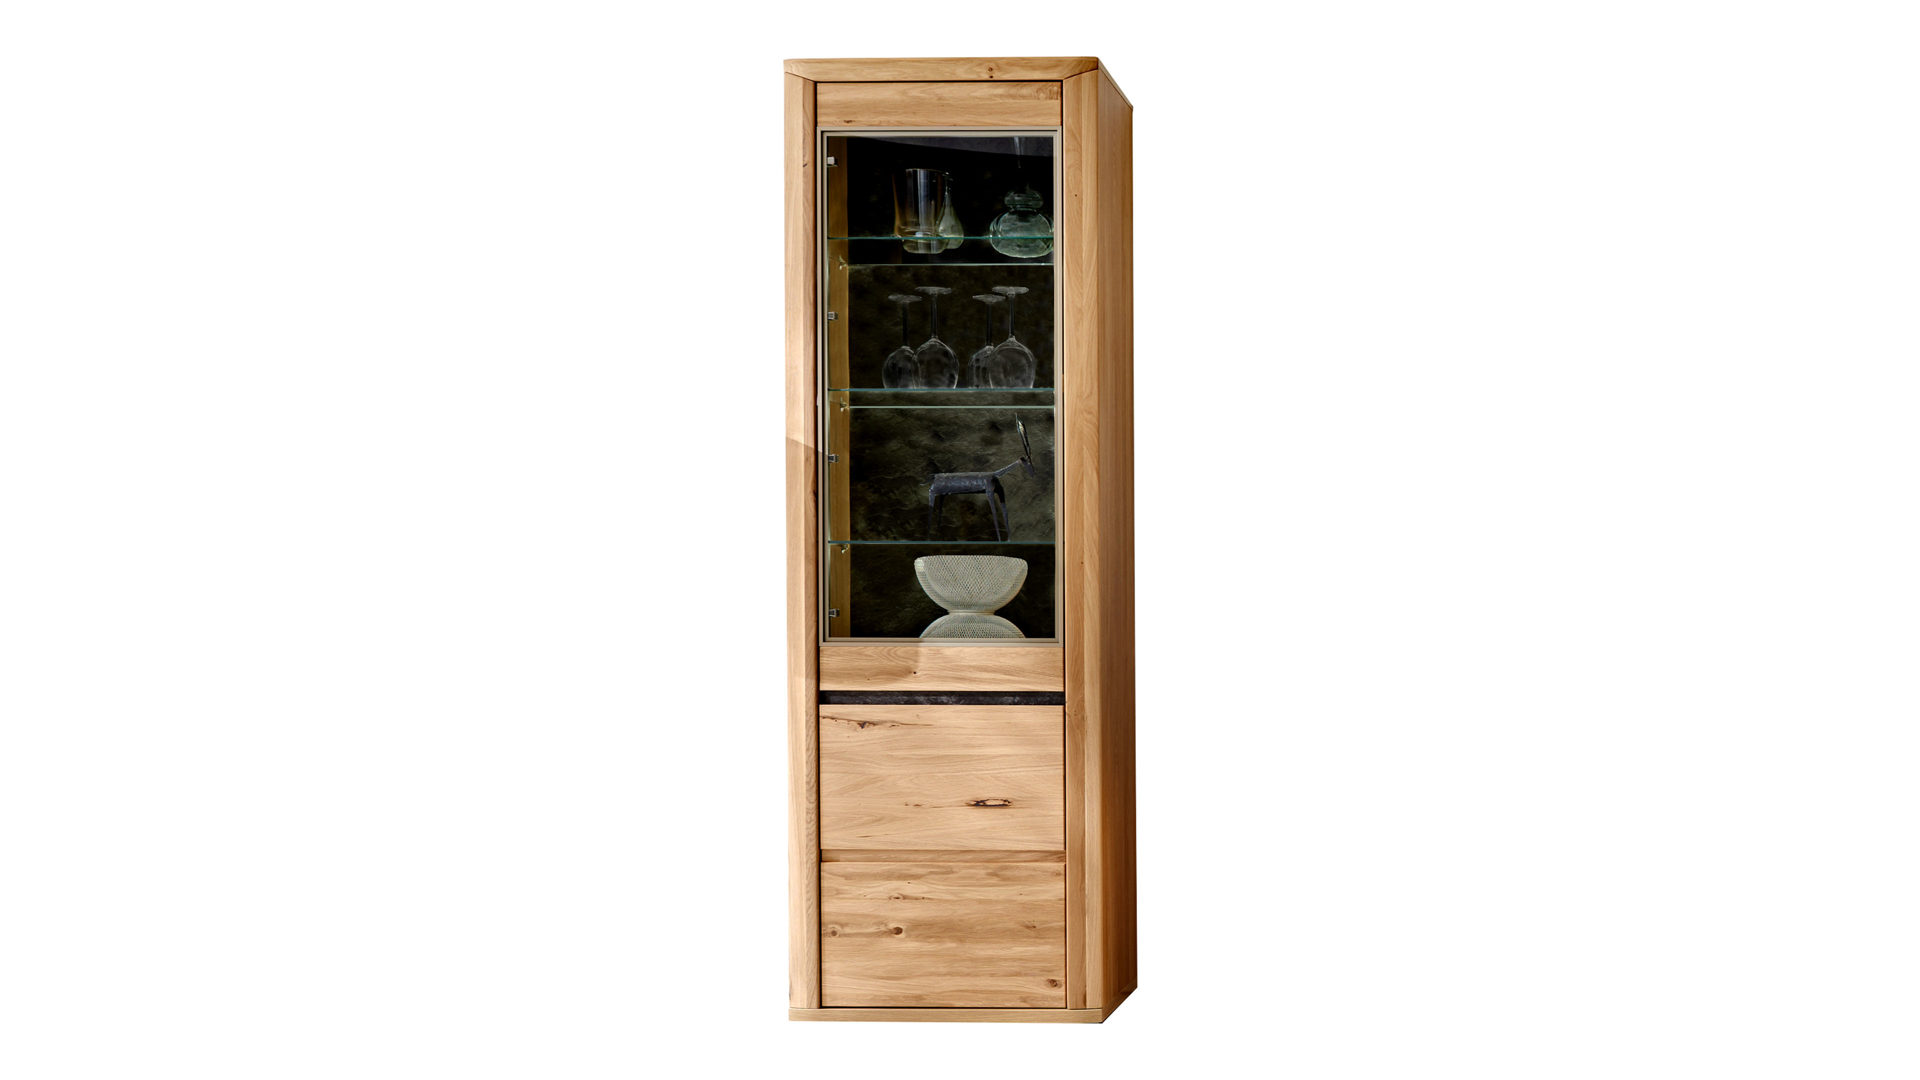 Vitrine Ideal möbel aus Holz in Holzfarben Vitrine Alteiche & Schiefer – zwei Türen